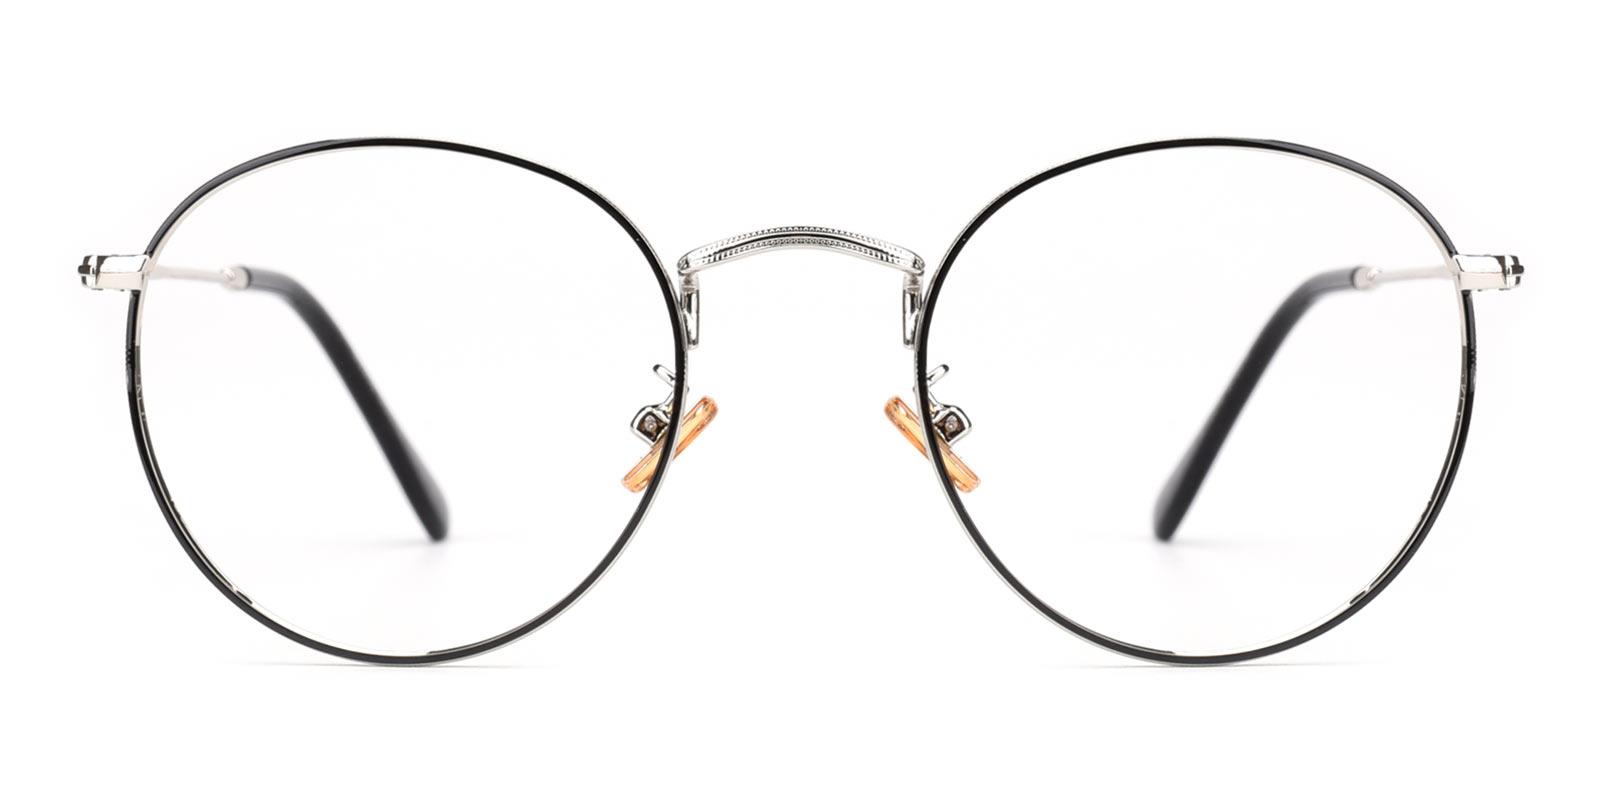 St. Louis Eyeglasses Cheap Prescription Glasses Online